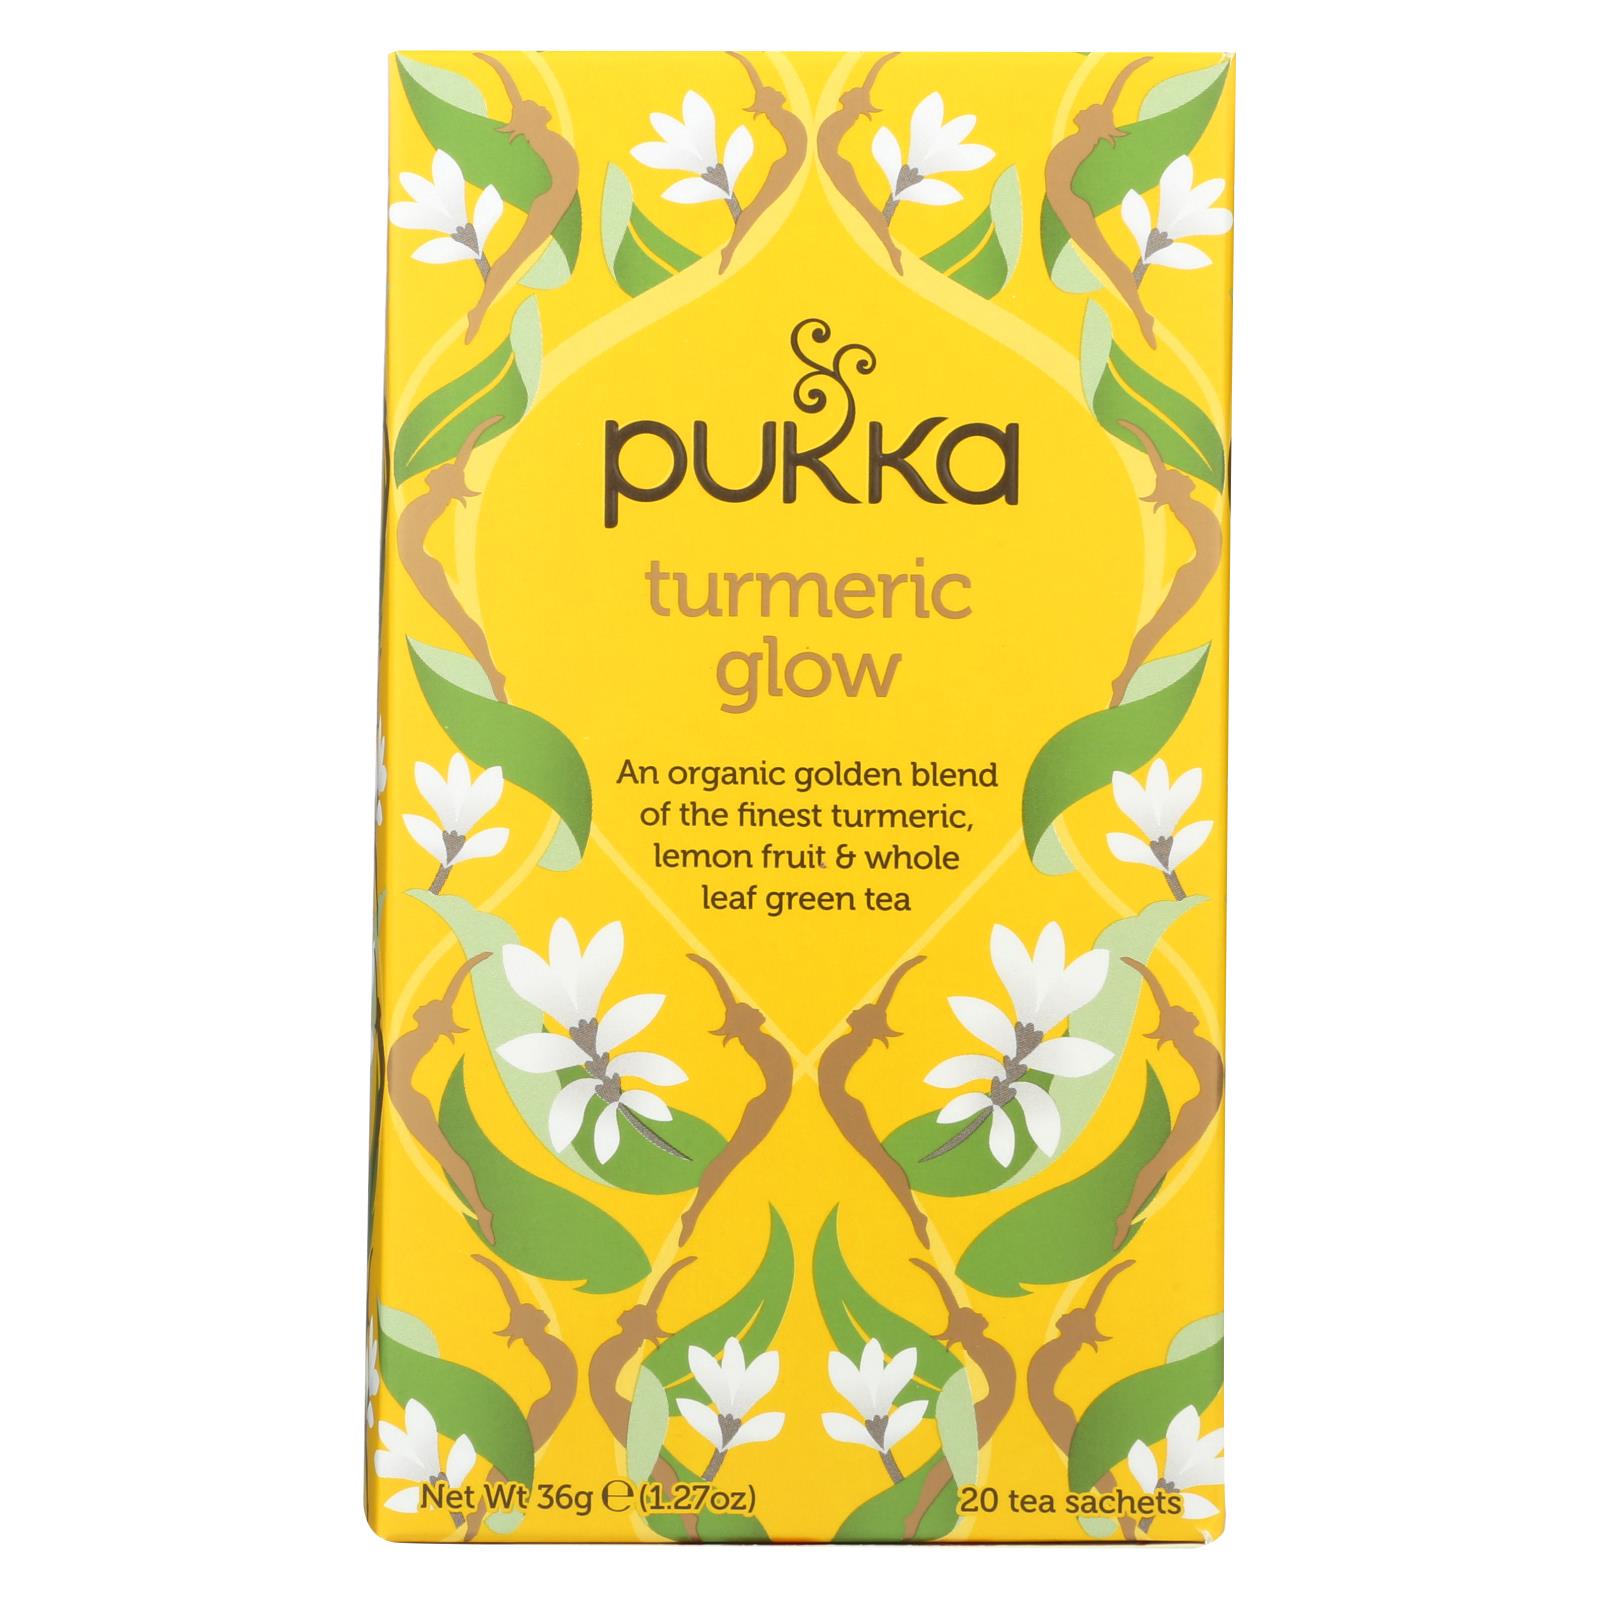 Pukka Organic Herbal Tea Turmeric Glow - 6개 묶음상품 - 20 CT